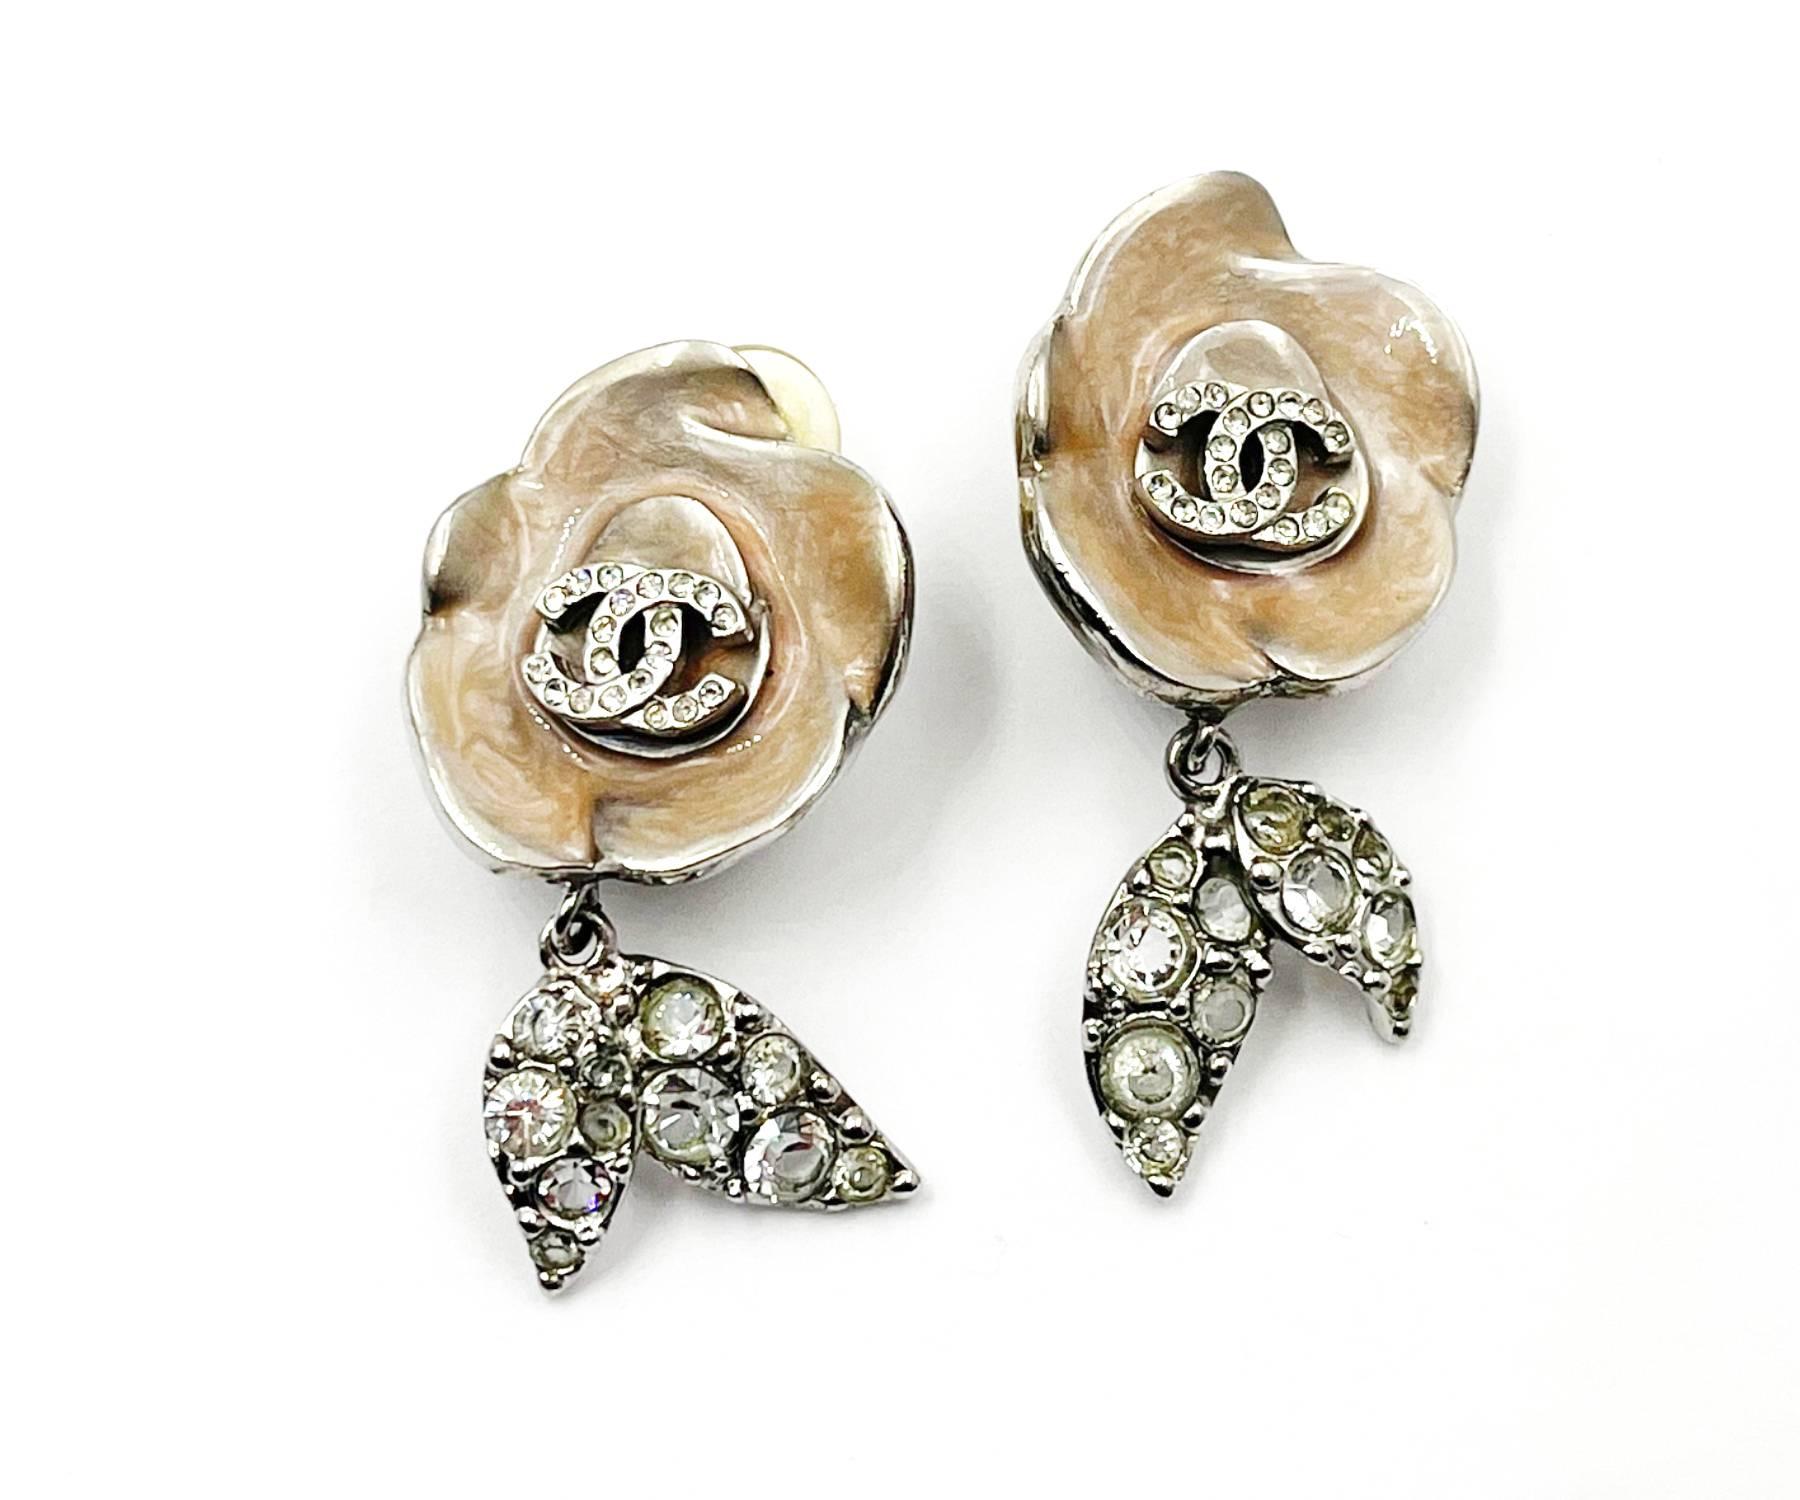 Chanel Silber CC Kristall Rosa Emaille Blumenblatt-Ohrclips

*Markierung 04
*Hergestellt in Frankreich
*Kommt mit dem Originalkarton

-Ungefähr 1,75